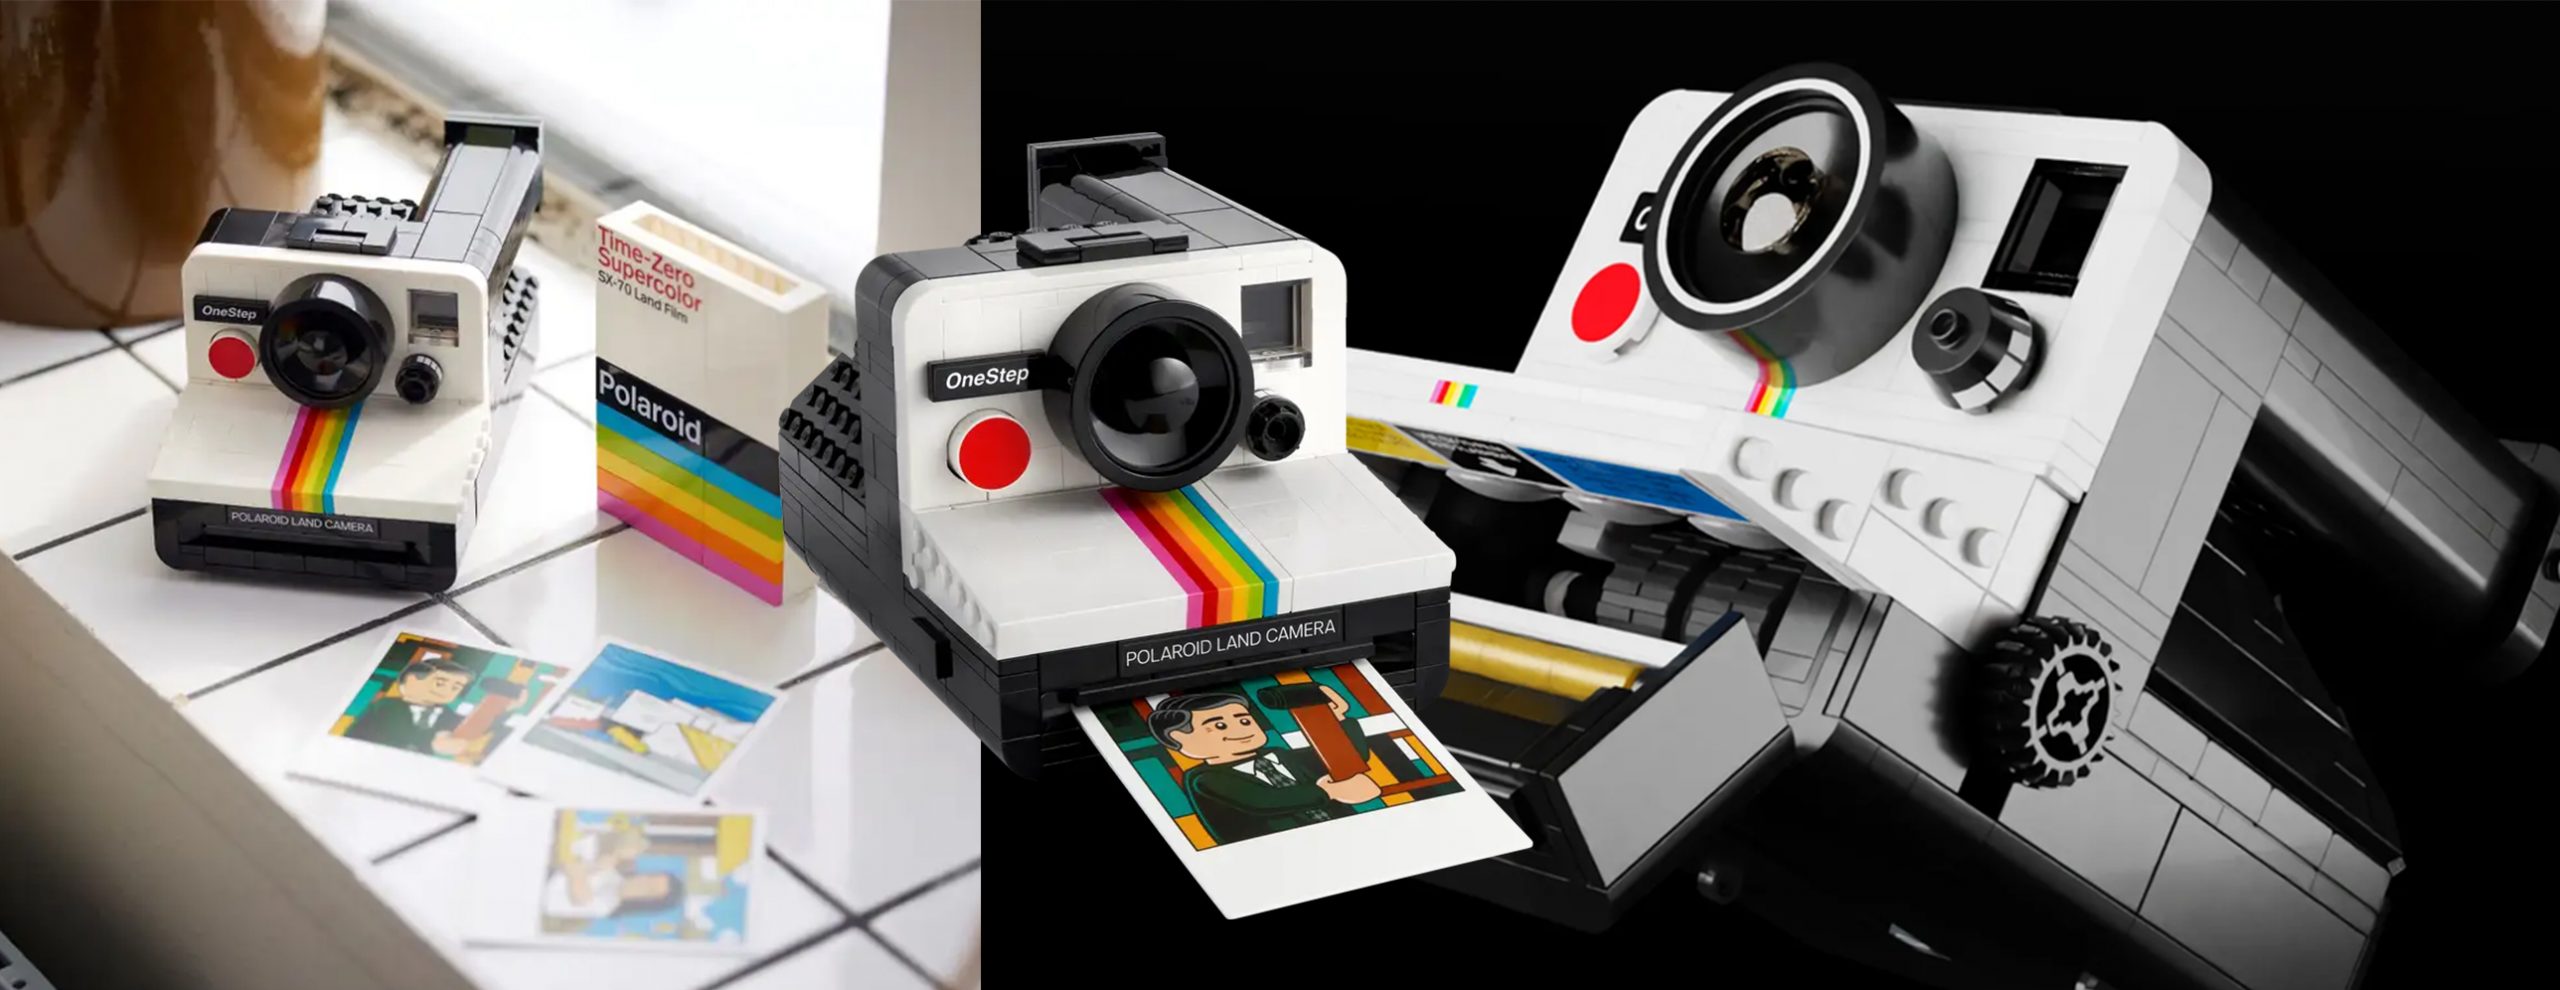 Lego Polaroid Camera announced - Niche Gamer